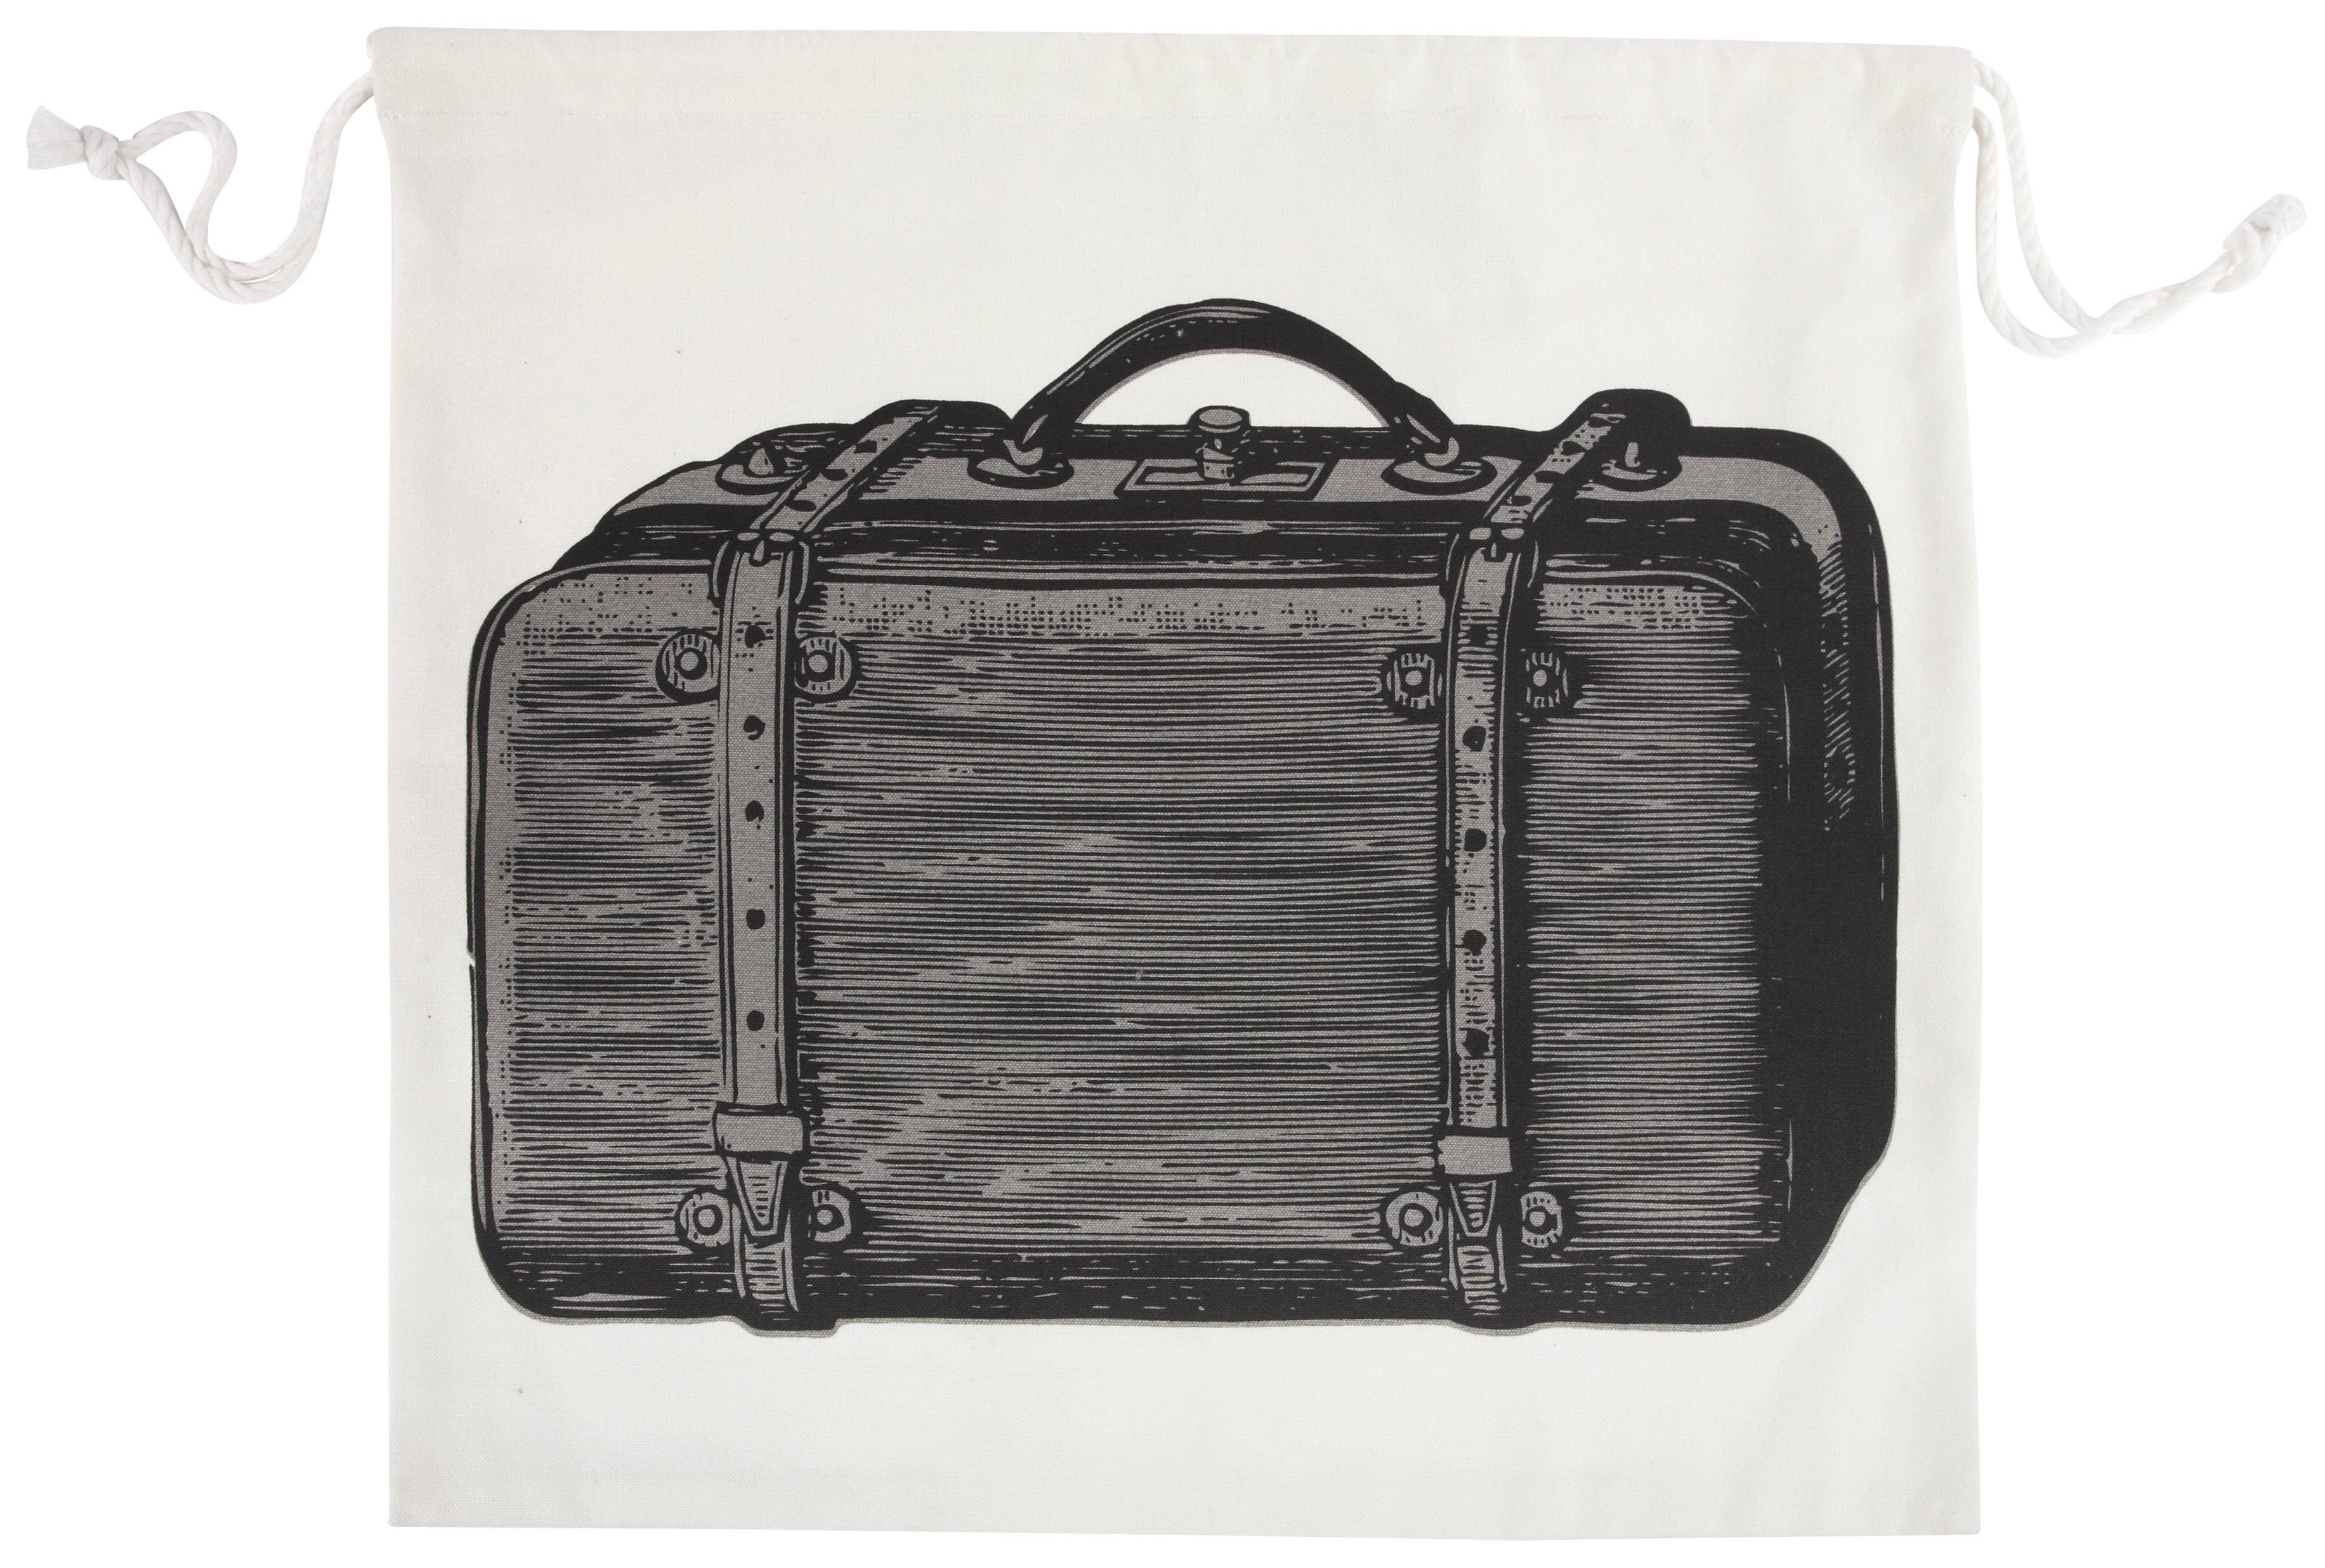 Vintage-Inspired Travel Bag | Men’s Luggage